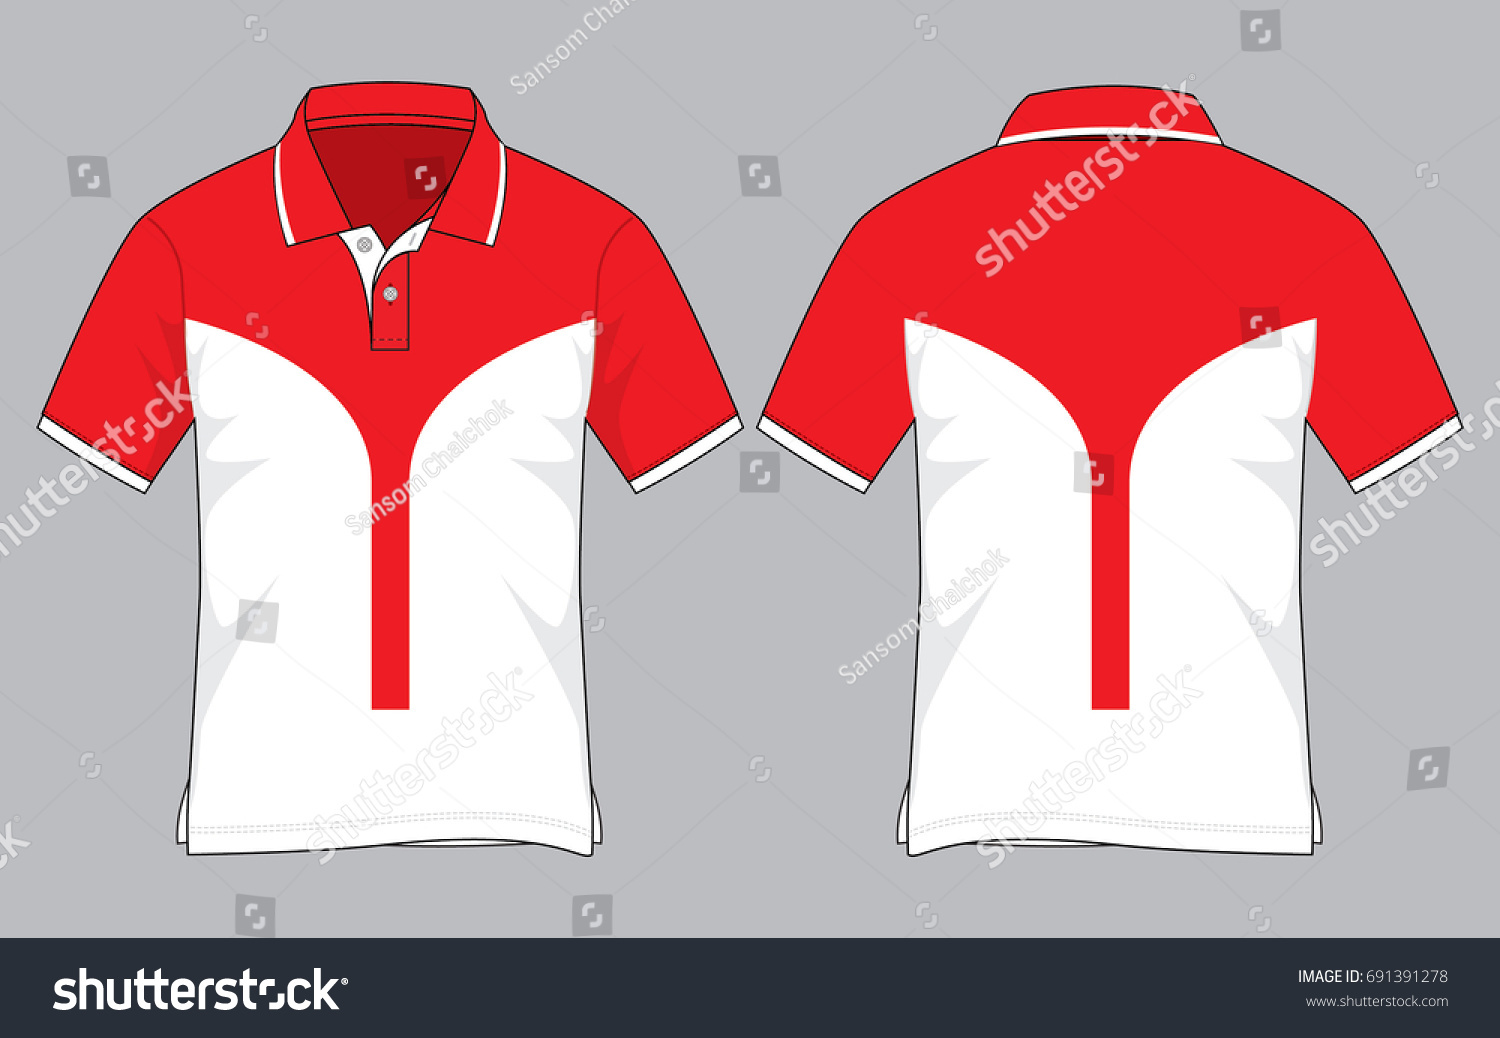 Twotone Polo Shirt Design Vector Redwhite Stock Vector (Royalty Free ...